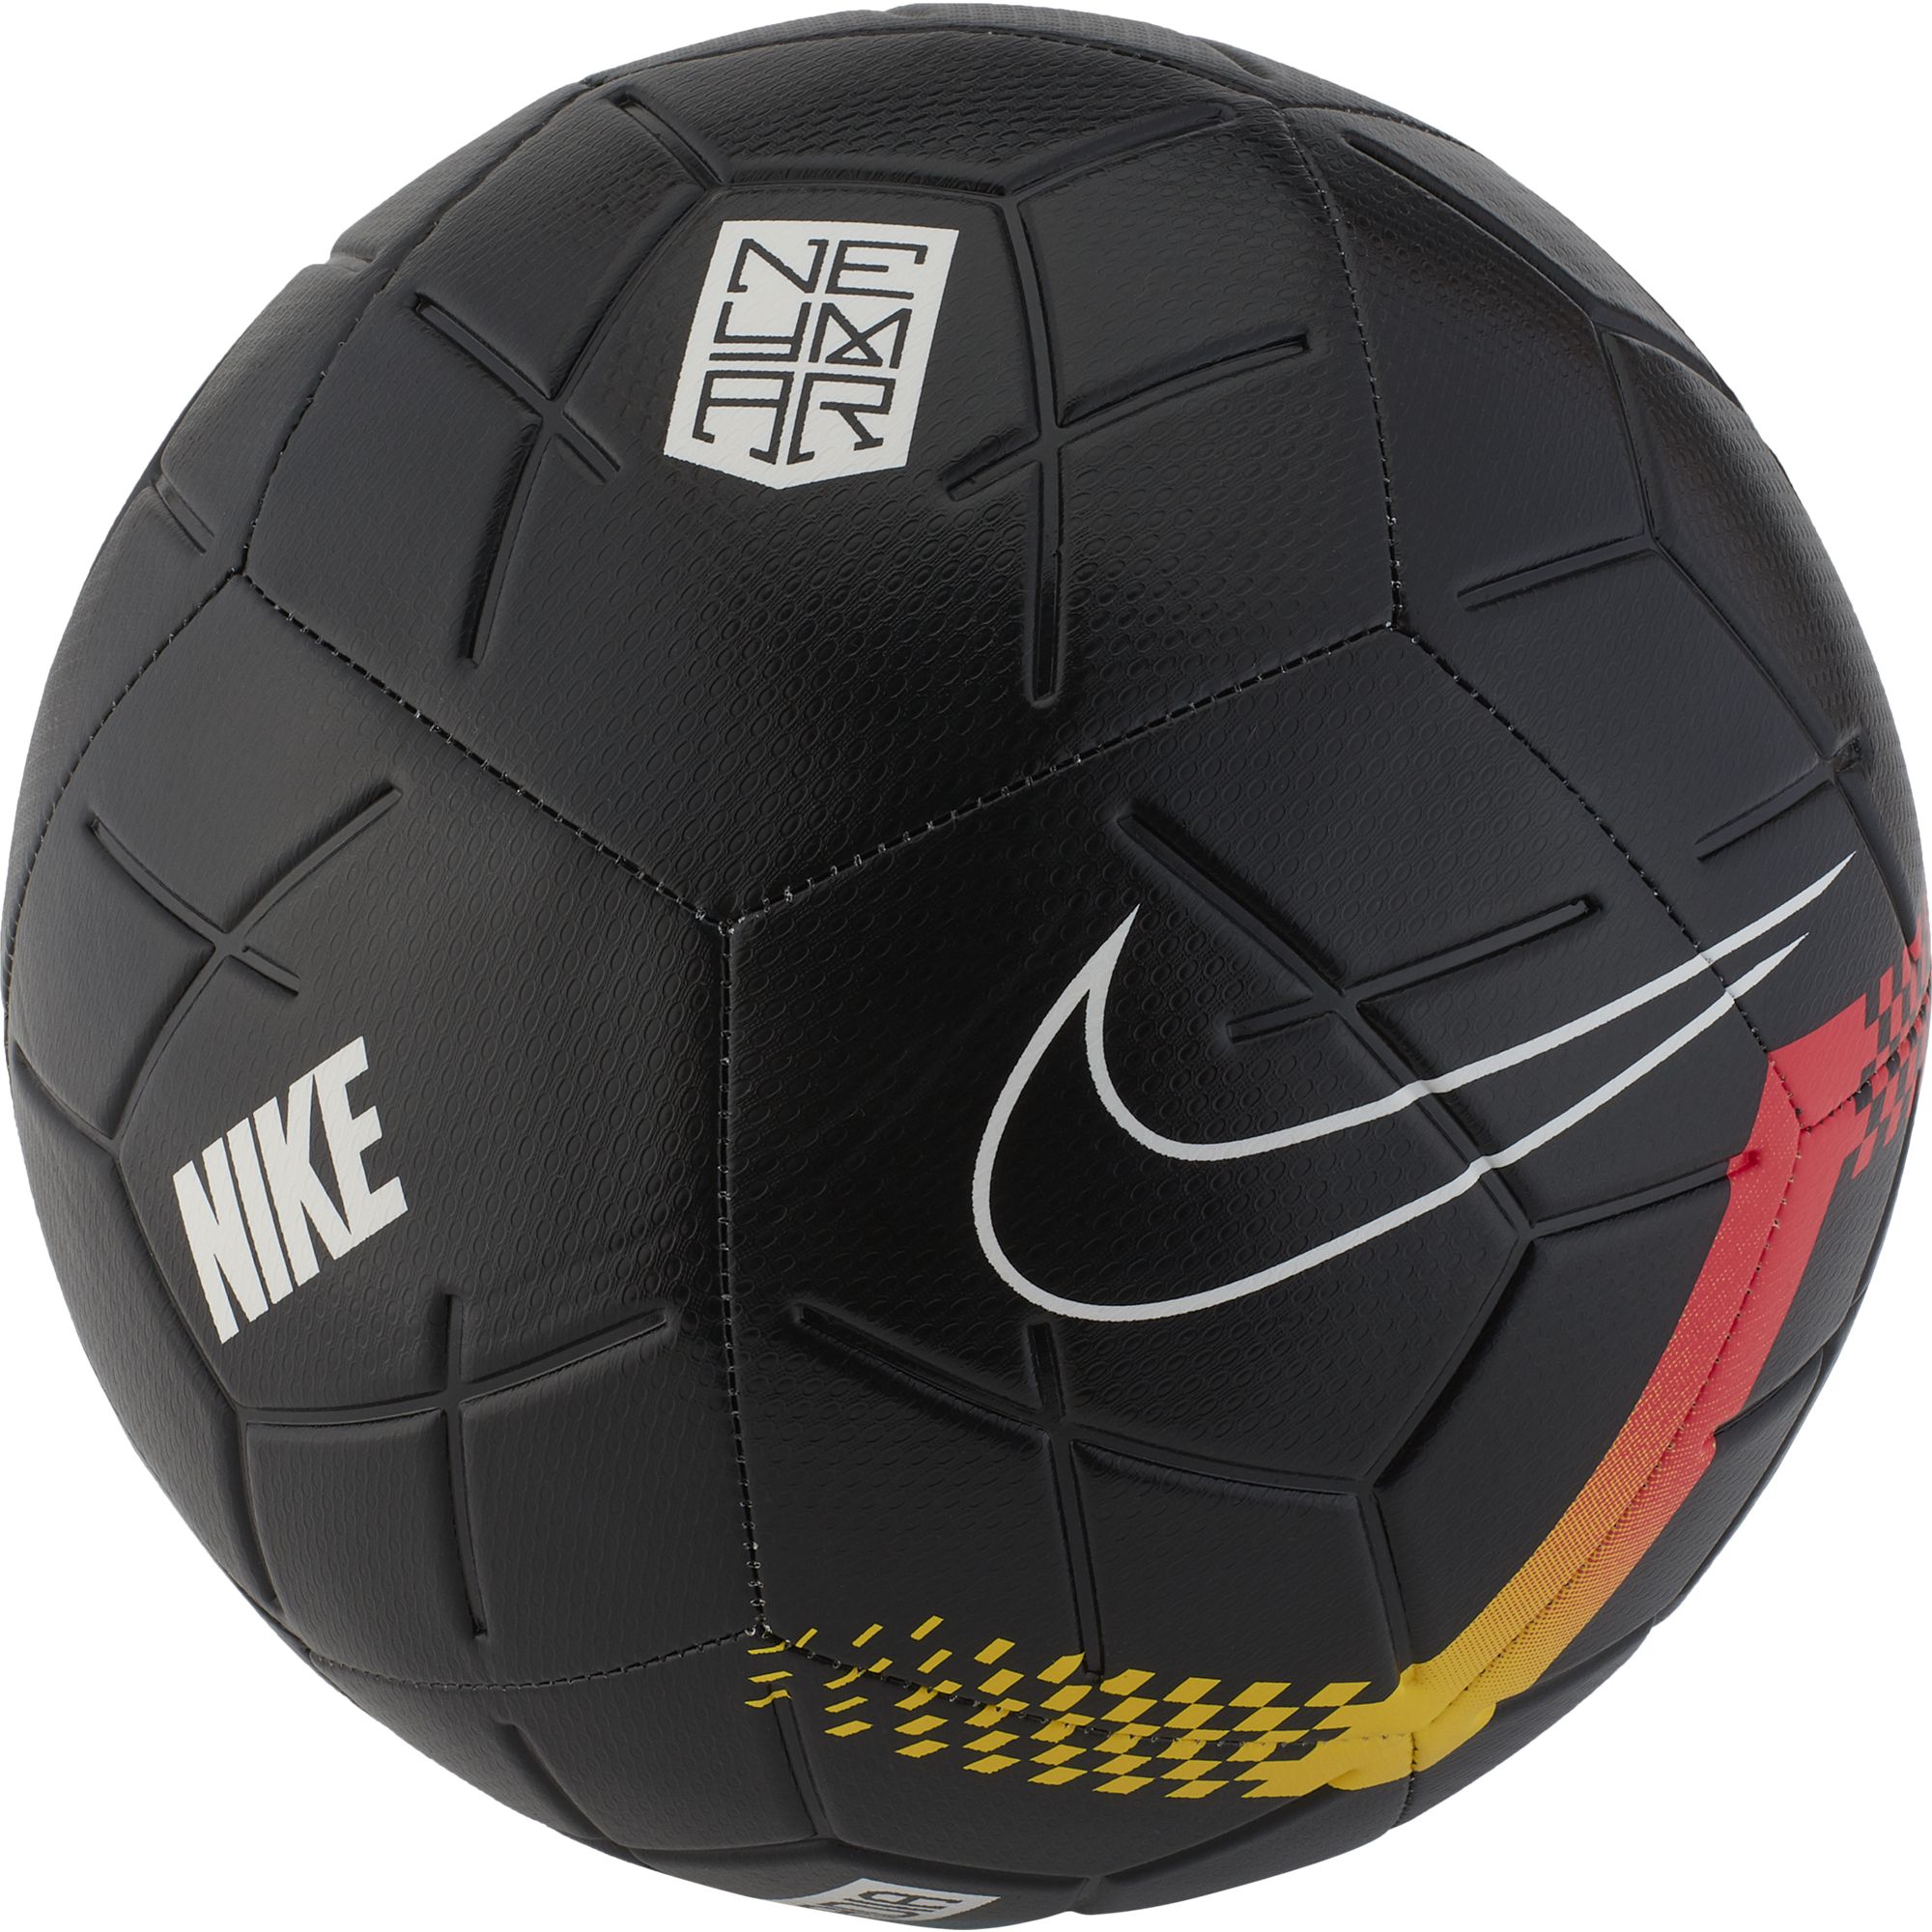 select strike soccer ball